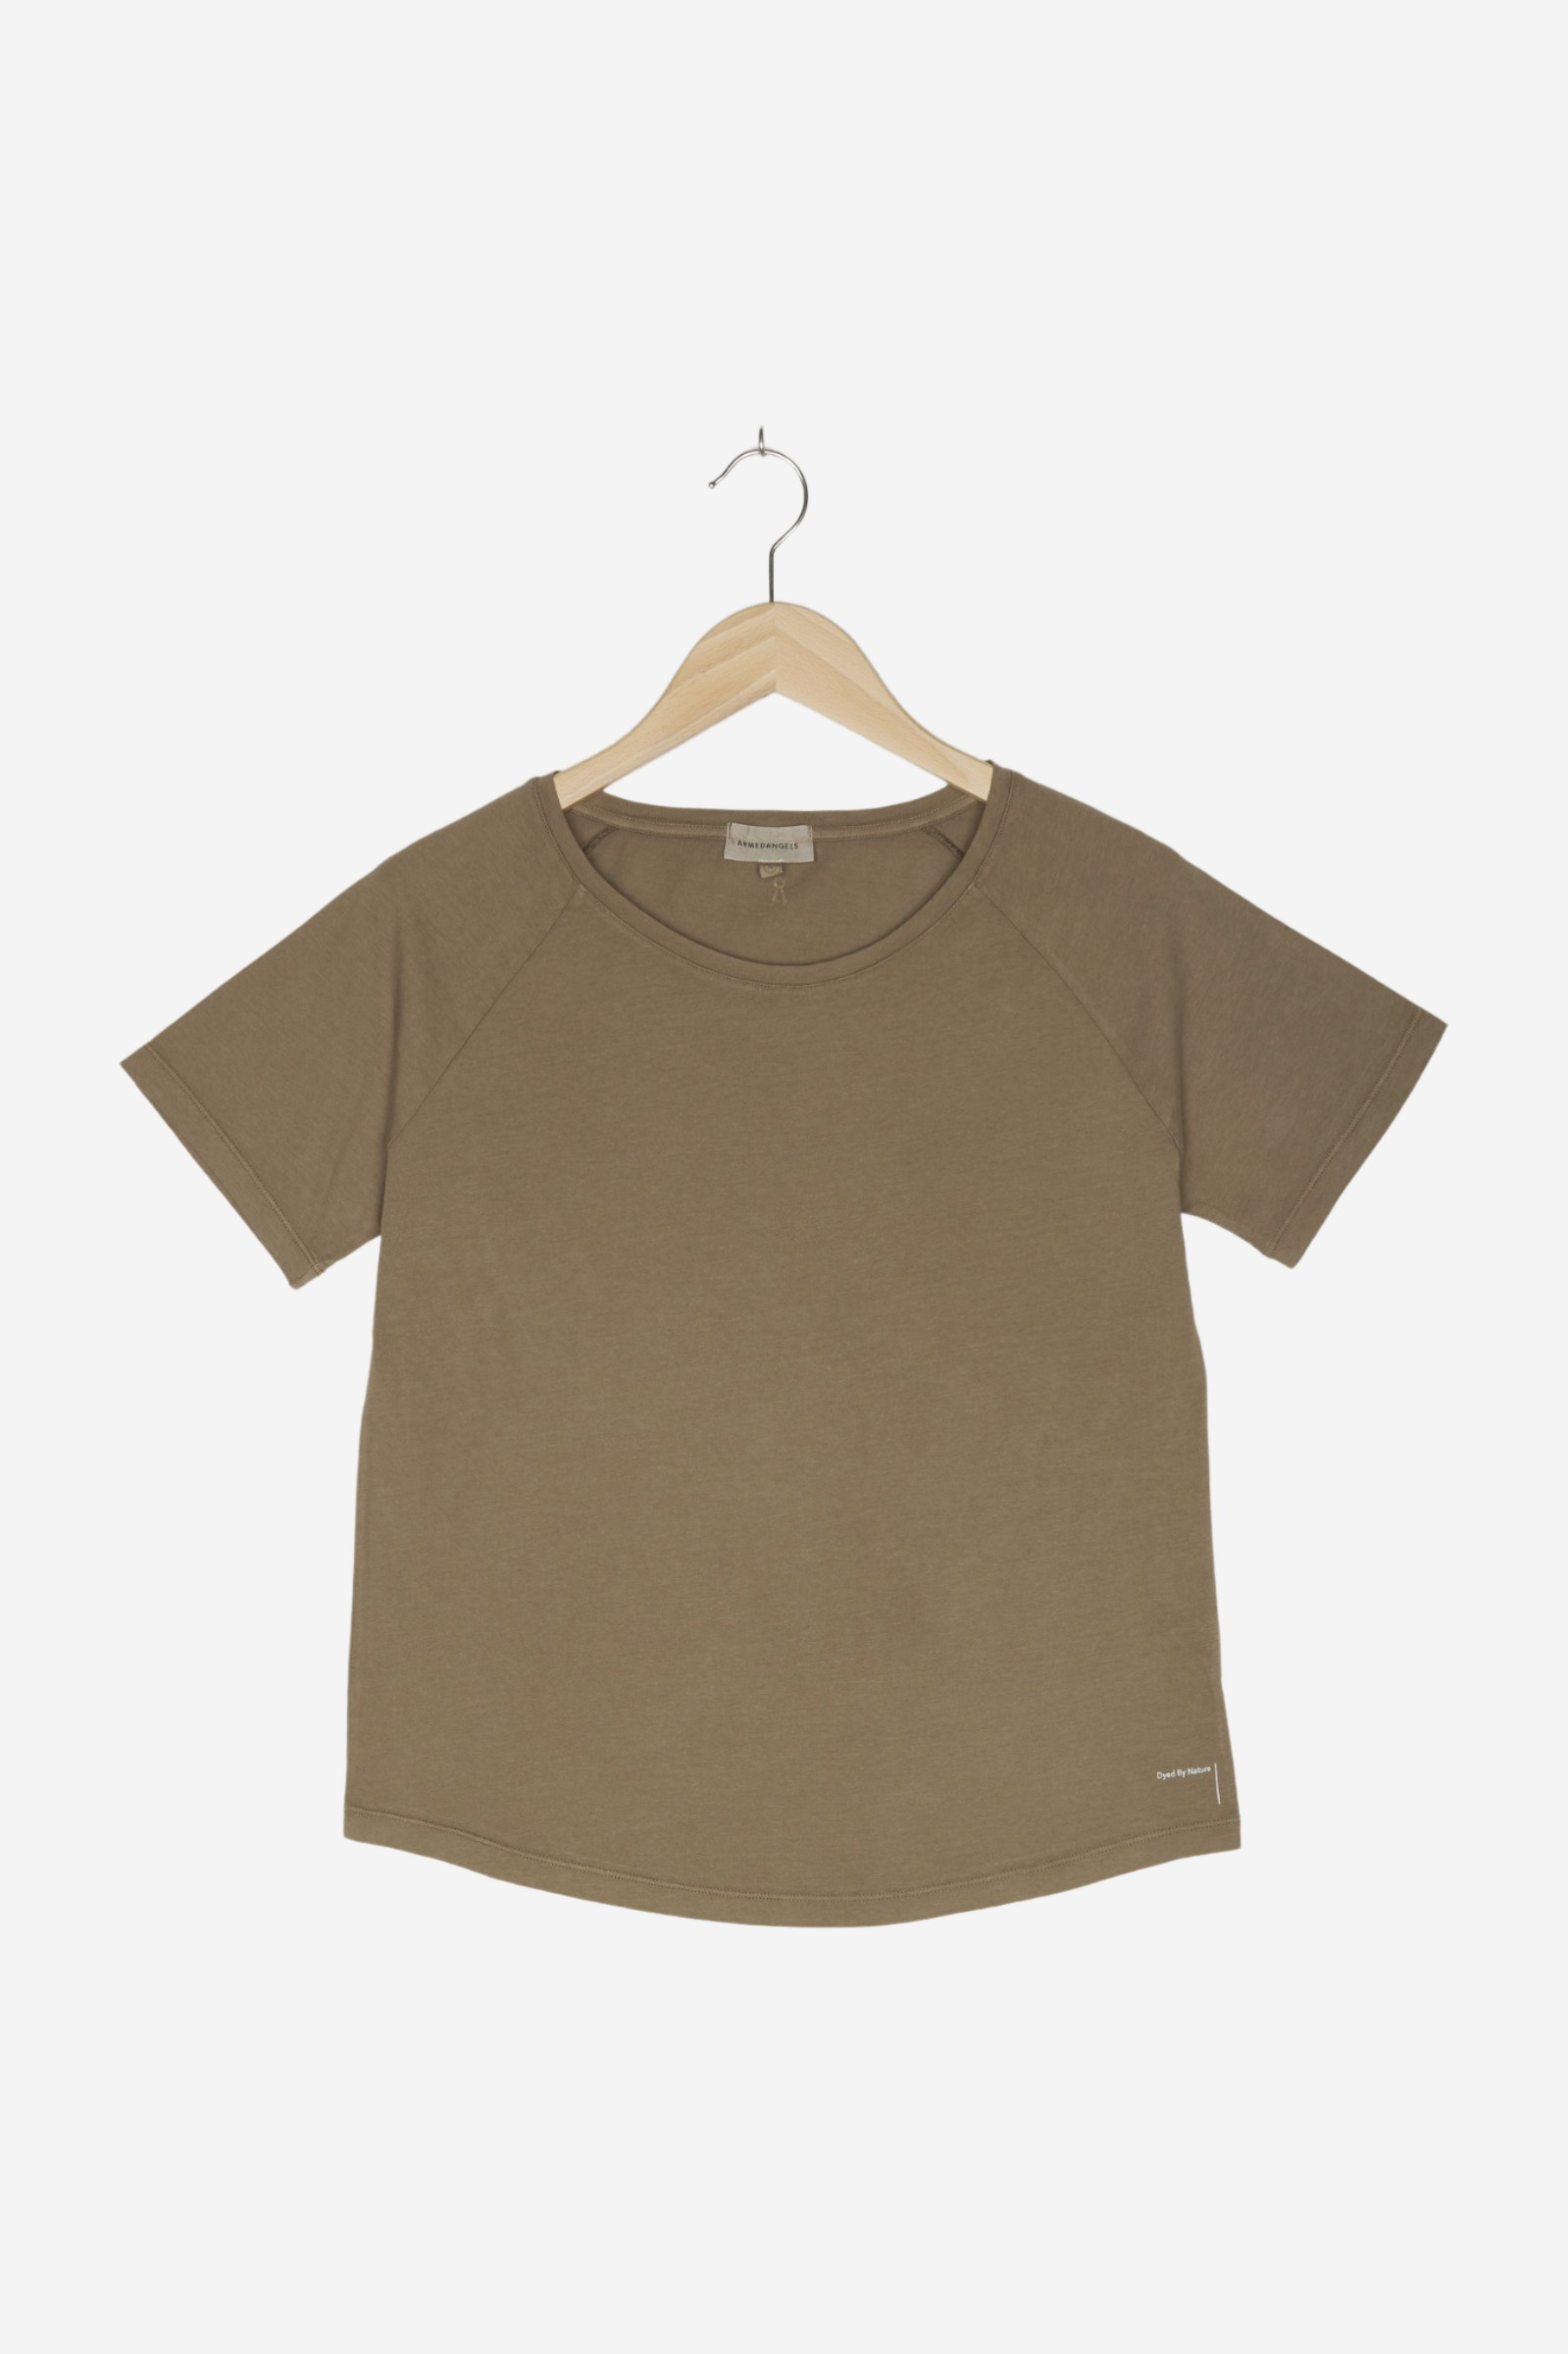 women Tops & T-Shirts Shirts / T-Shirt Charcoal